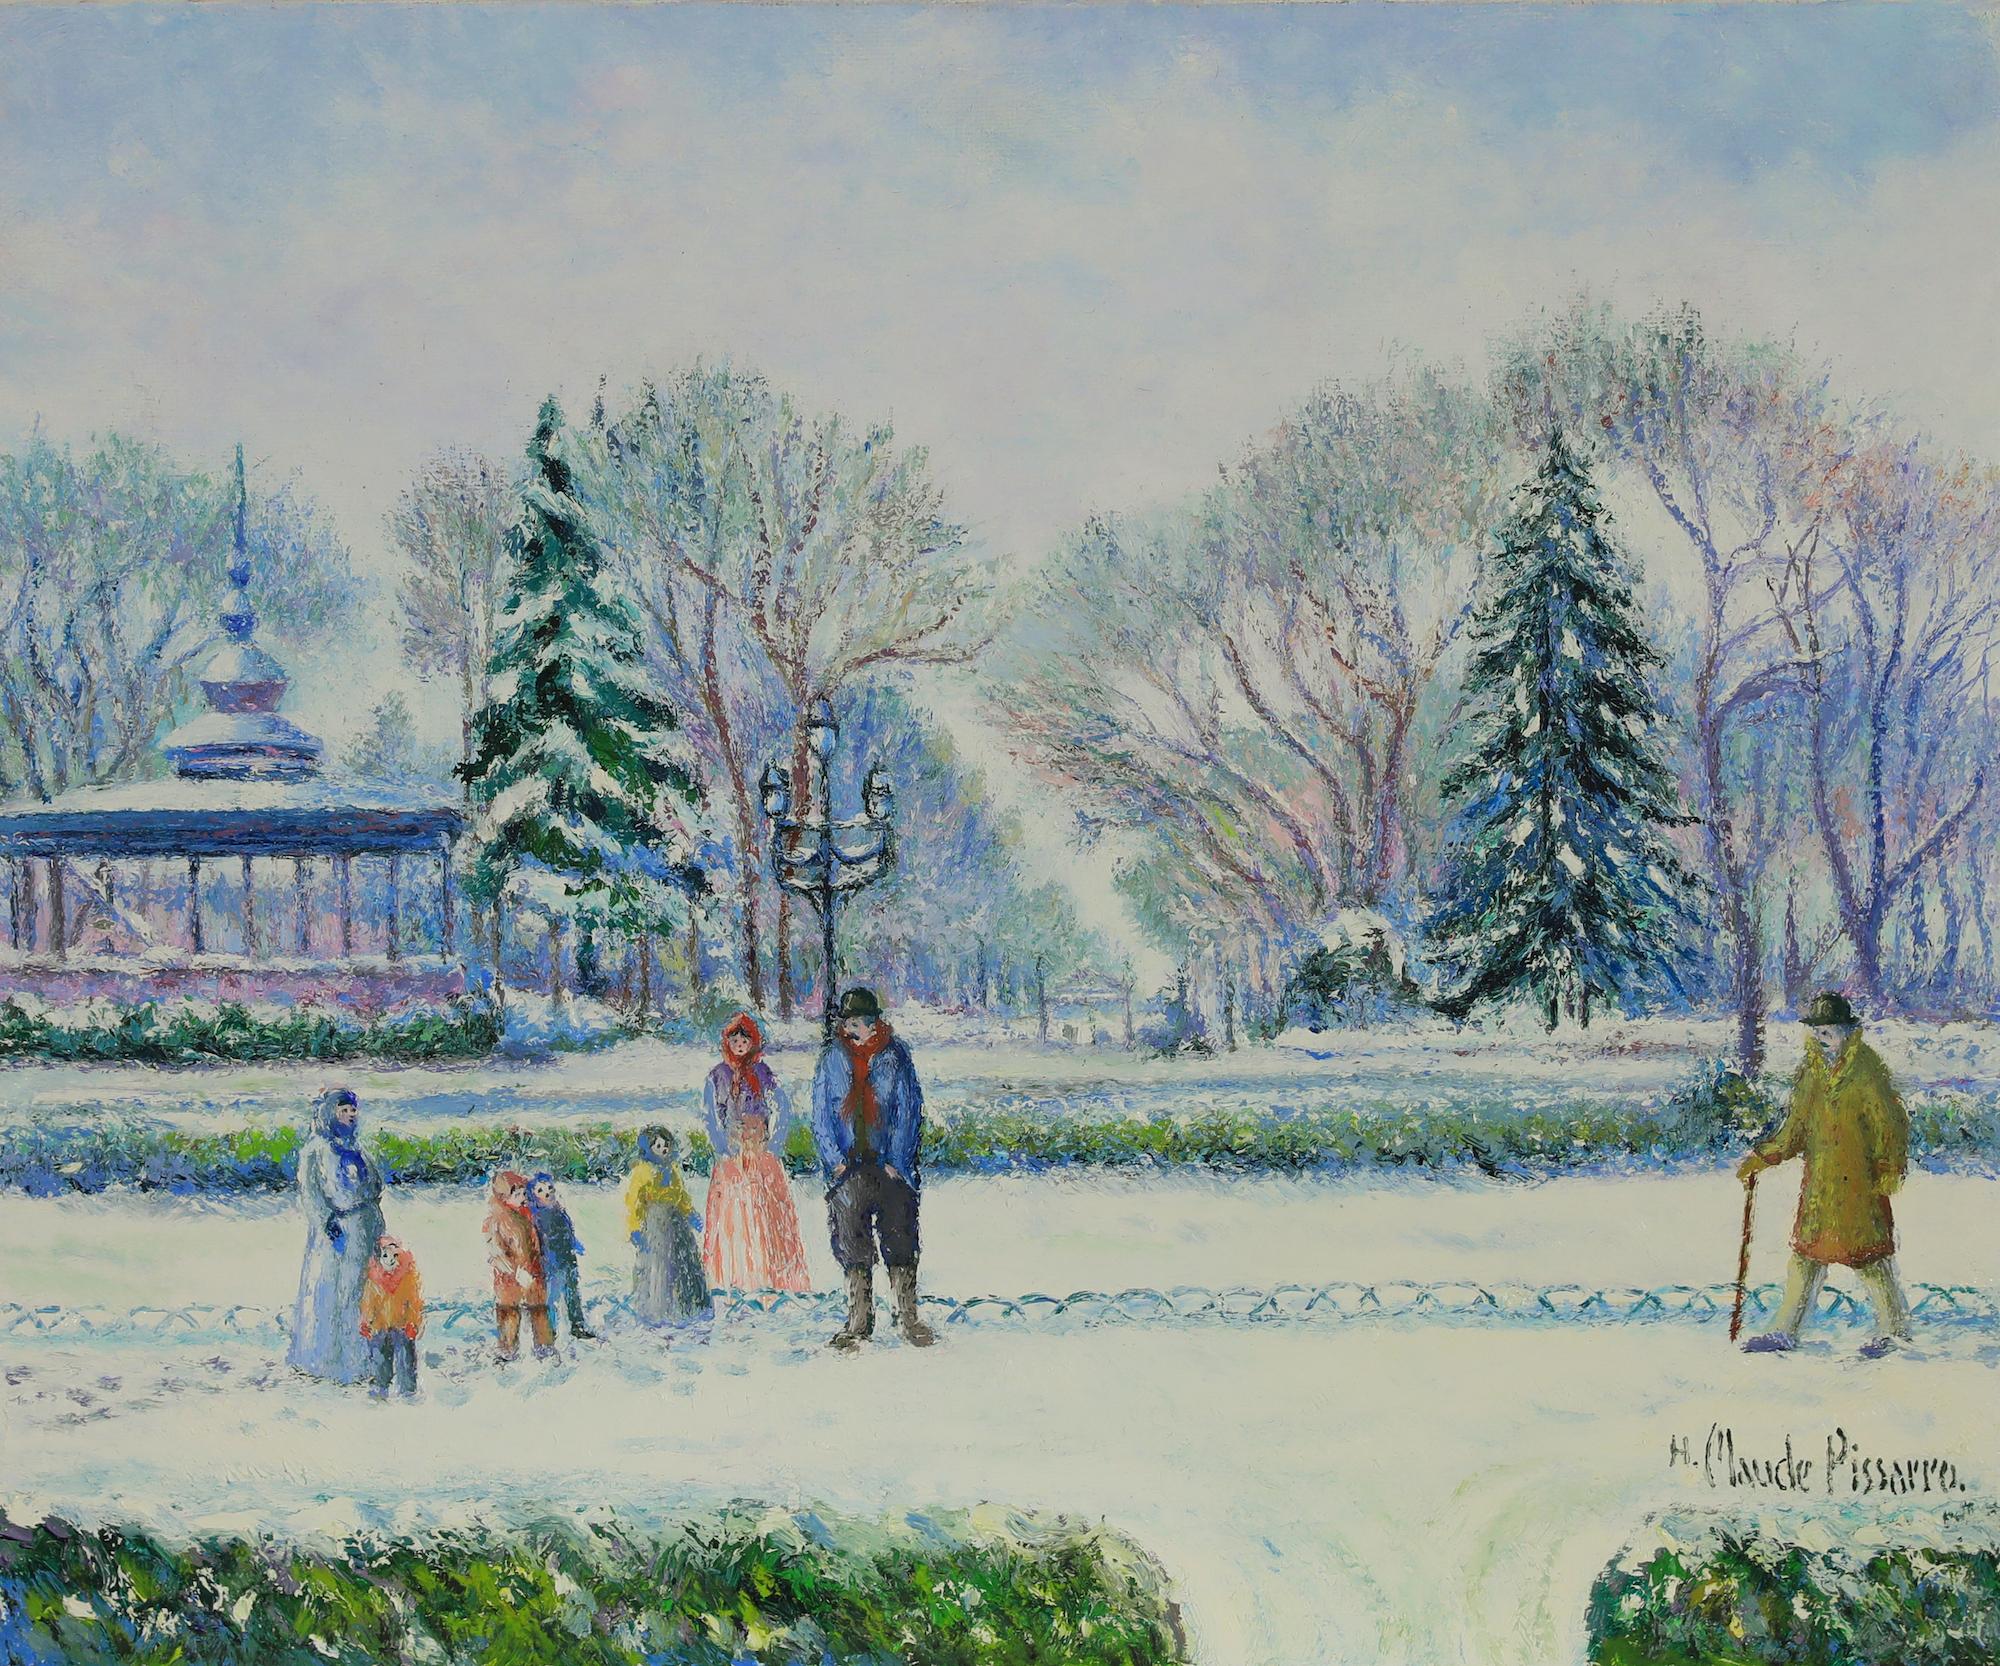 Landscape Painting Hughes Claude Pissarro - Tableau de paysage de neige intitulé Le Kiosque Joudon à Toulouse par H. Claude Pissarro